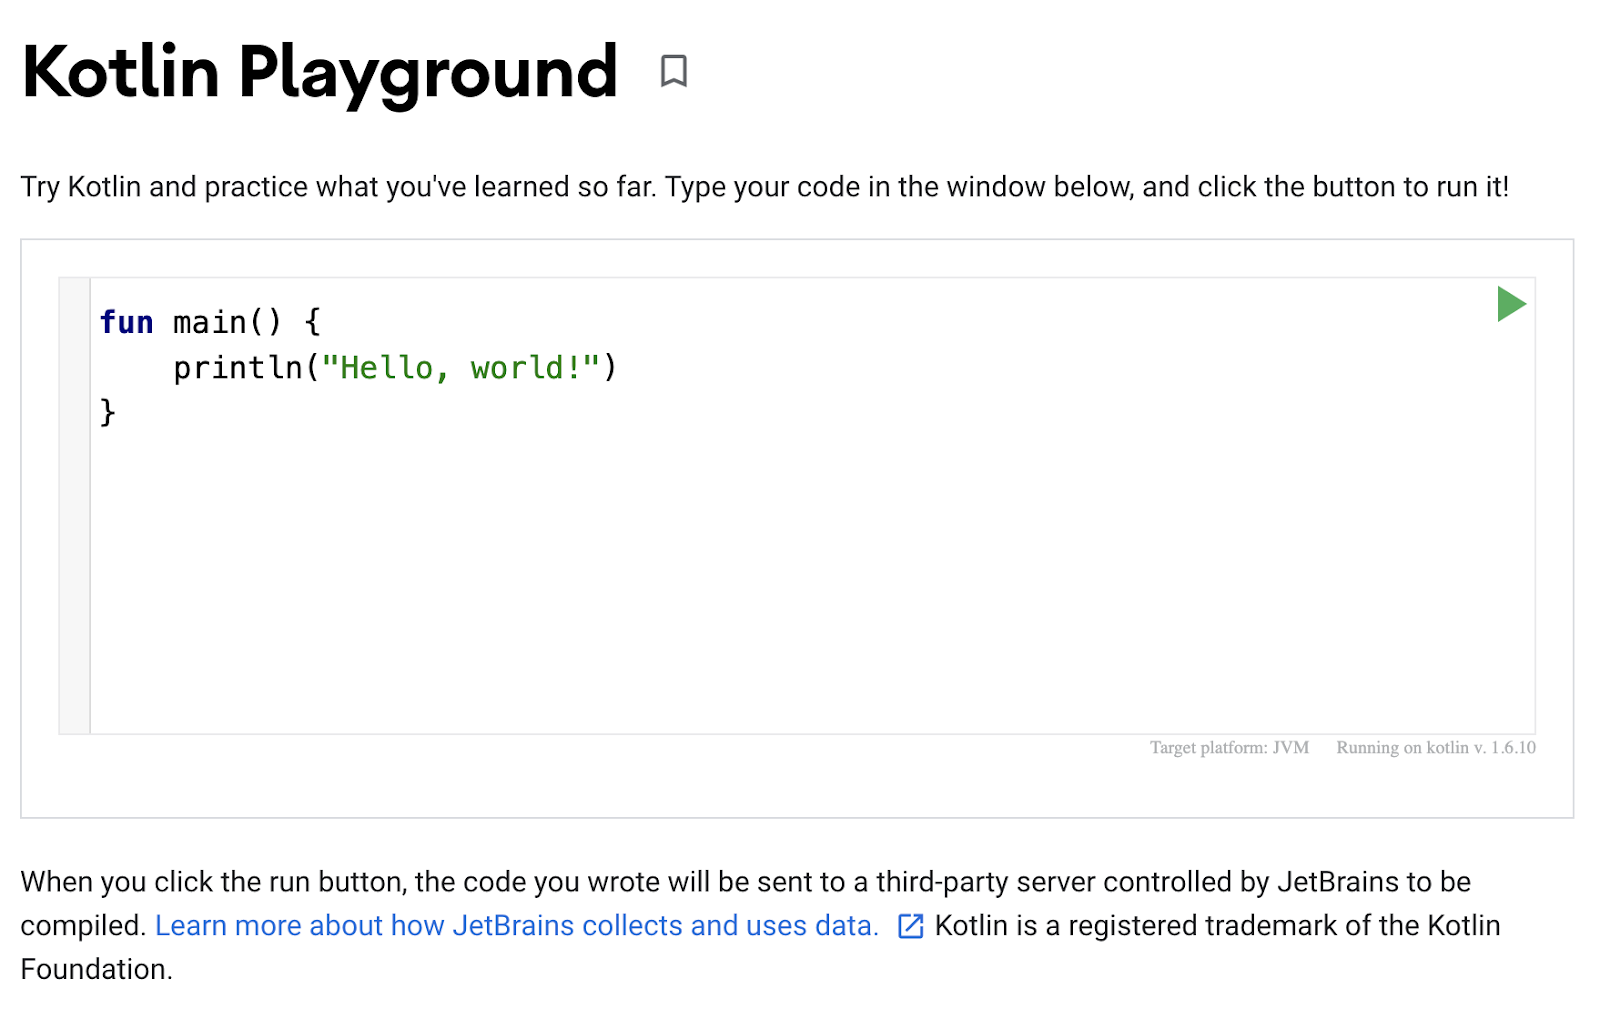 Se muestra una captura de pantalla de Playground de Kotlin. El editor de código muestra un programa simple para imprimir "Hello, world!" en el resultado.